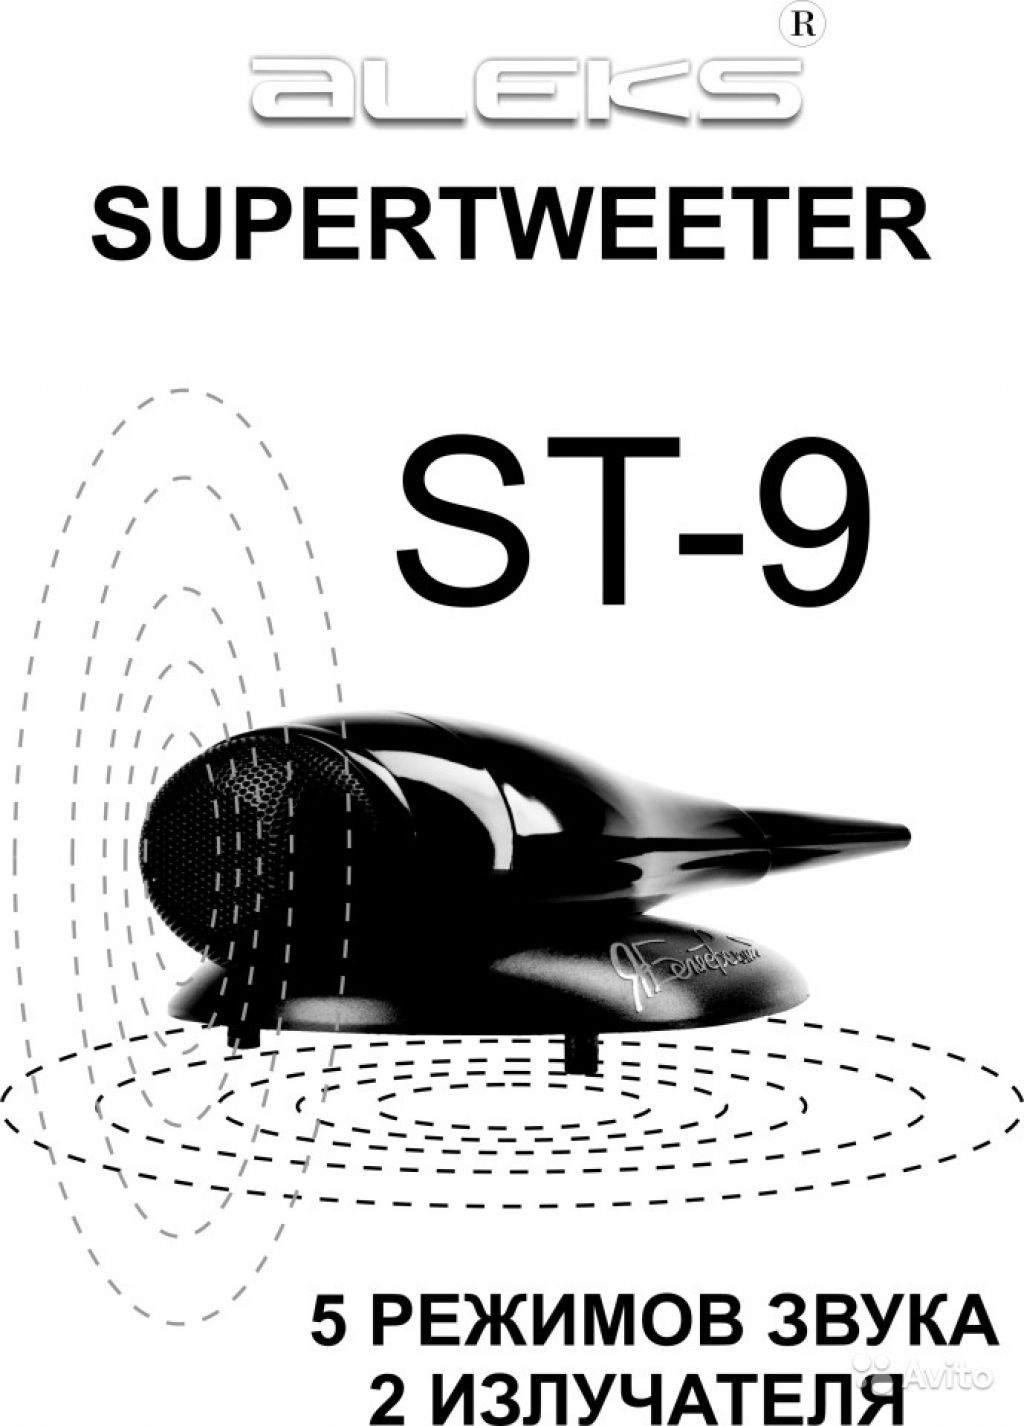 Супертвитеры ST-9 для любой акустики в Москве. Фото 1